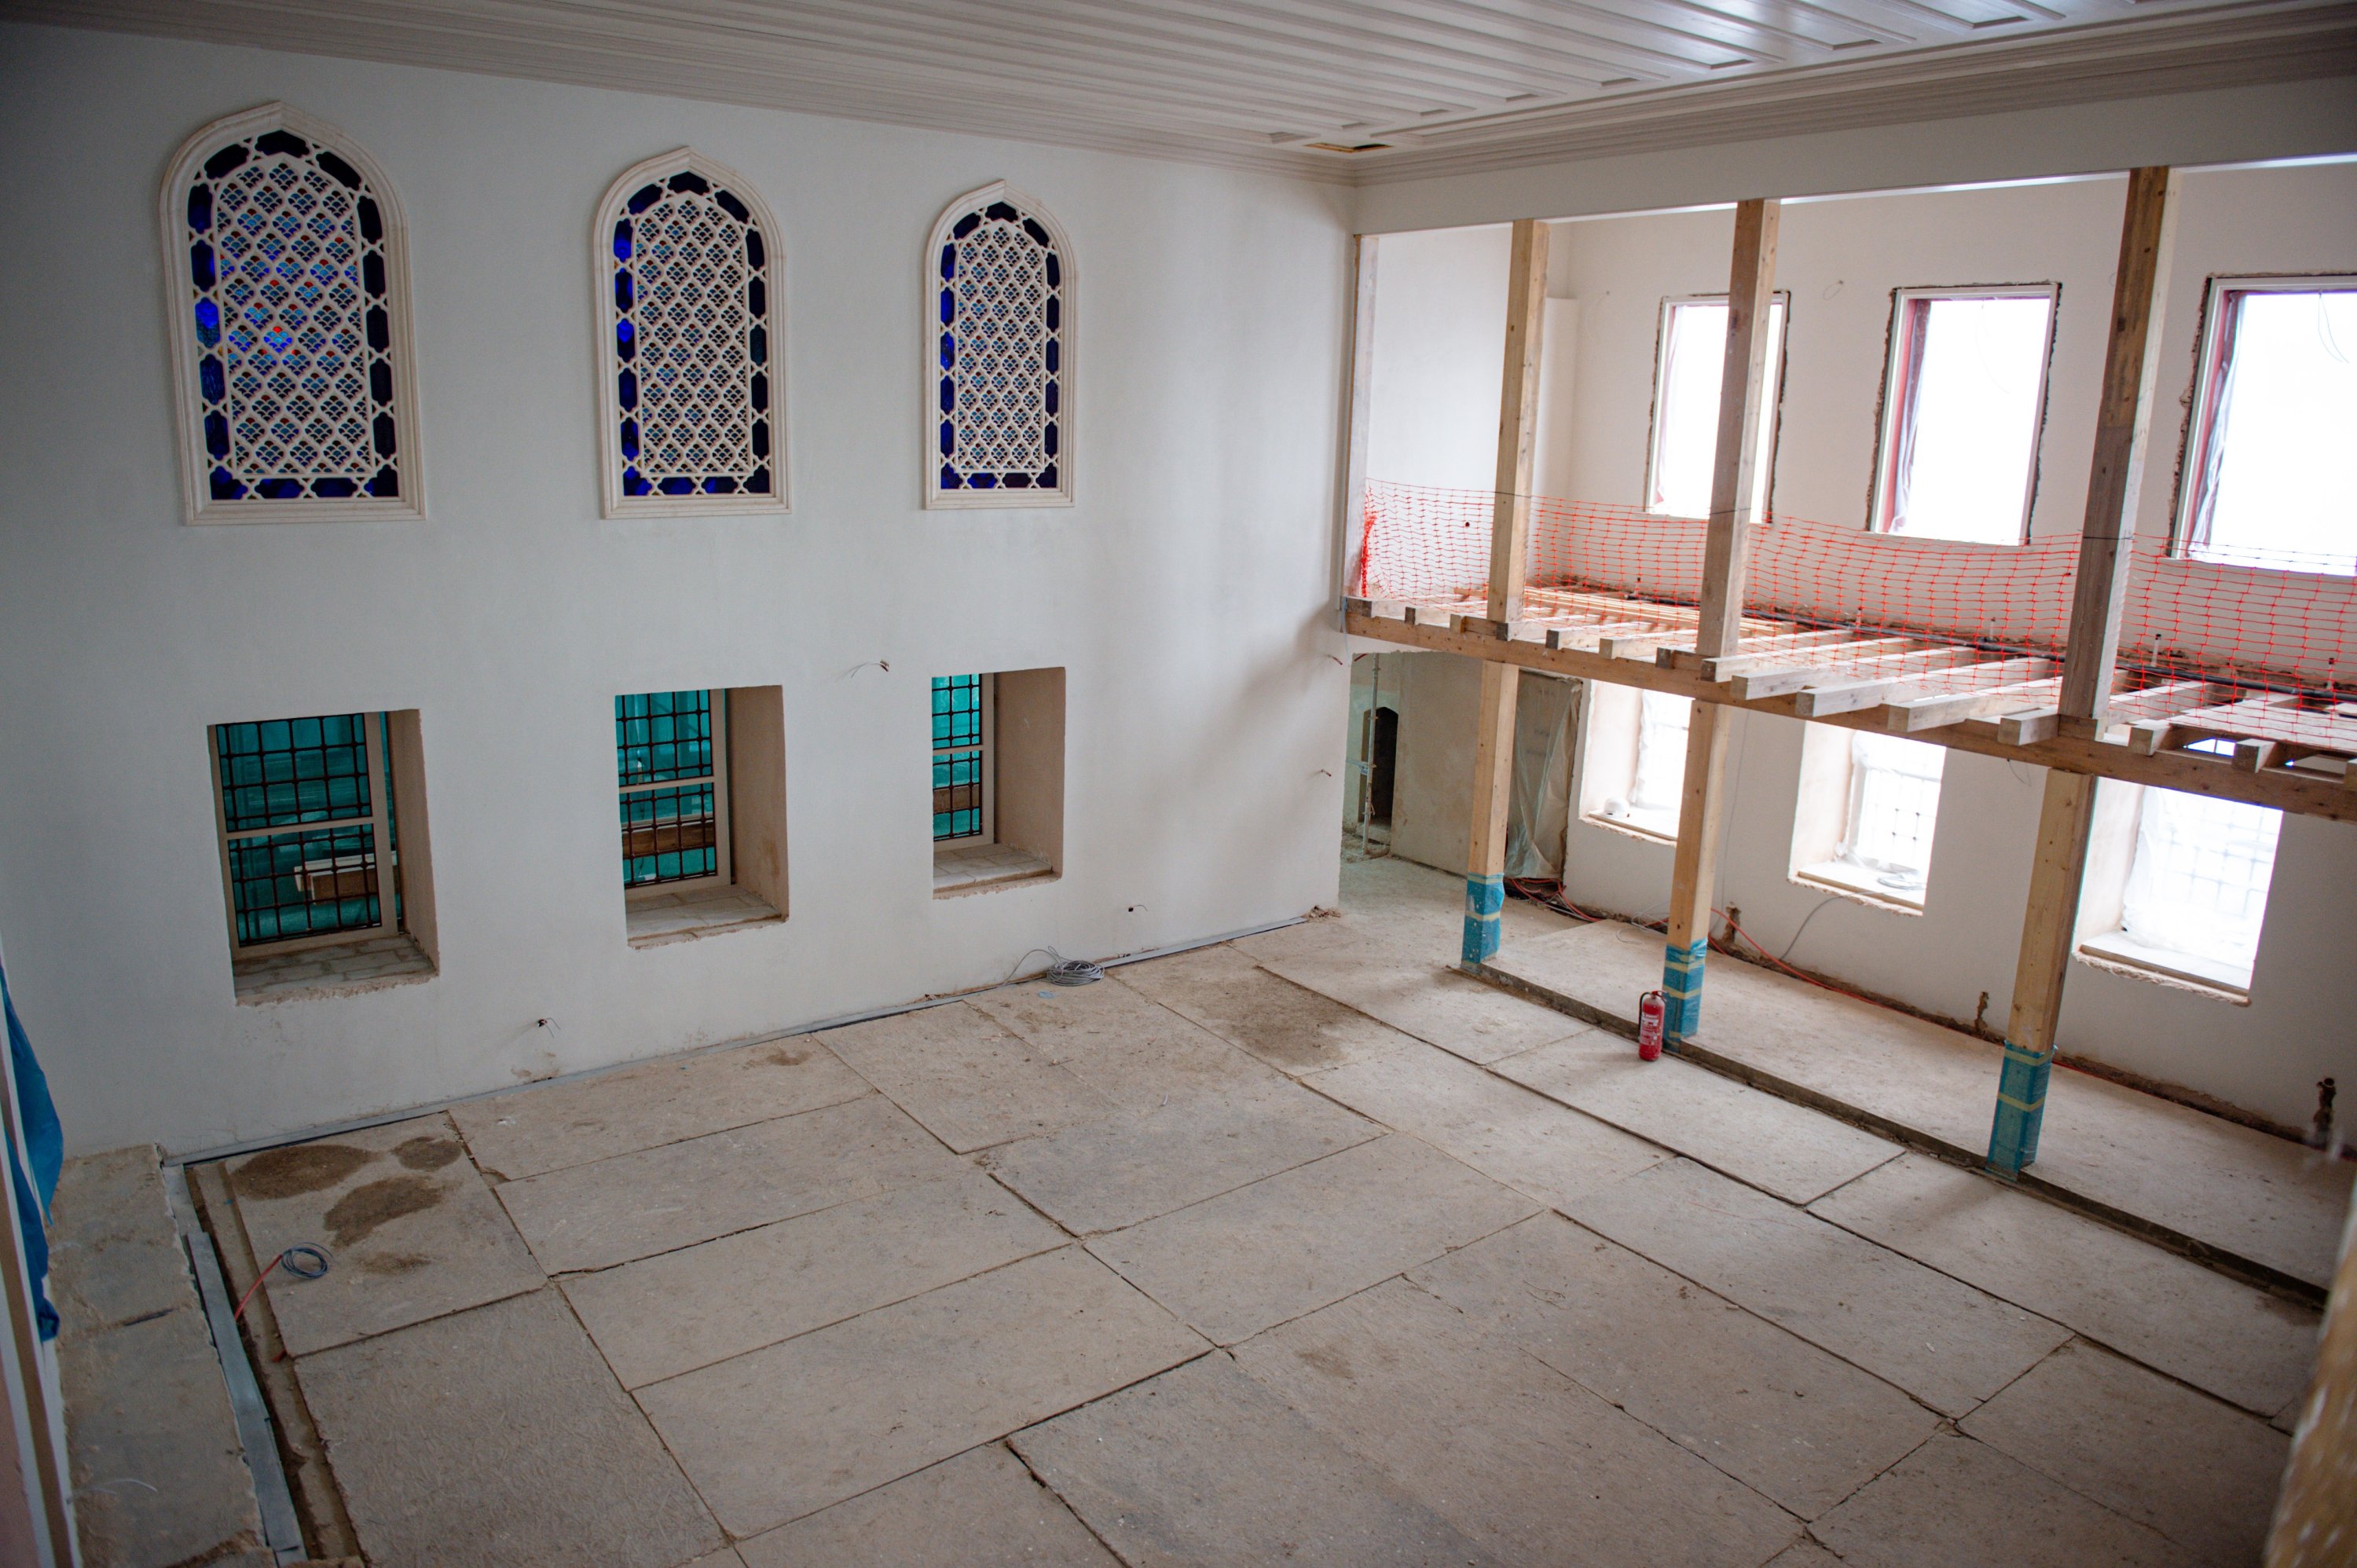 Bagian dalam Masjid Vaniköy setelah dipugar, Istanbul, Türkiye, 17 Januari 2023. (Foto oleh Saffet Azak)